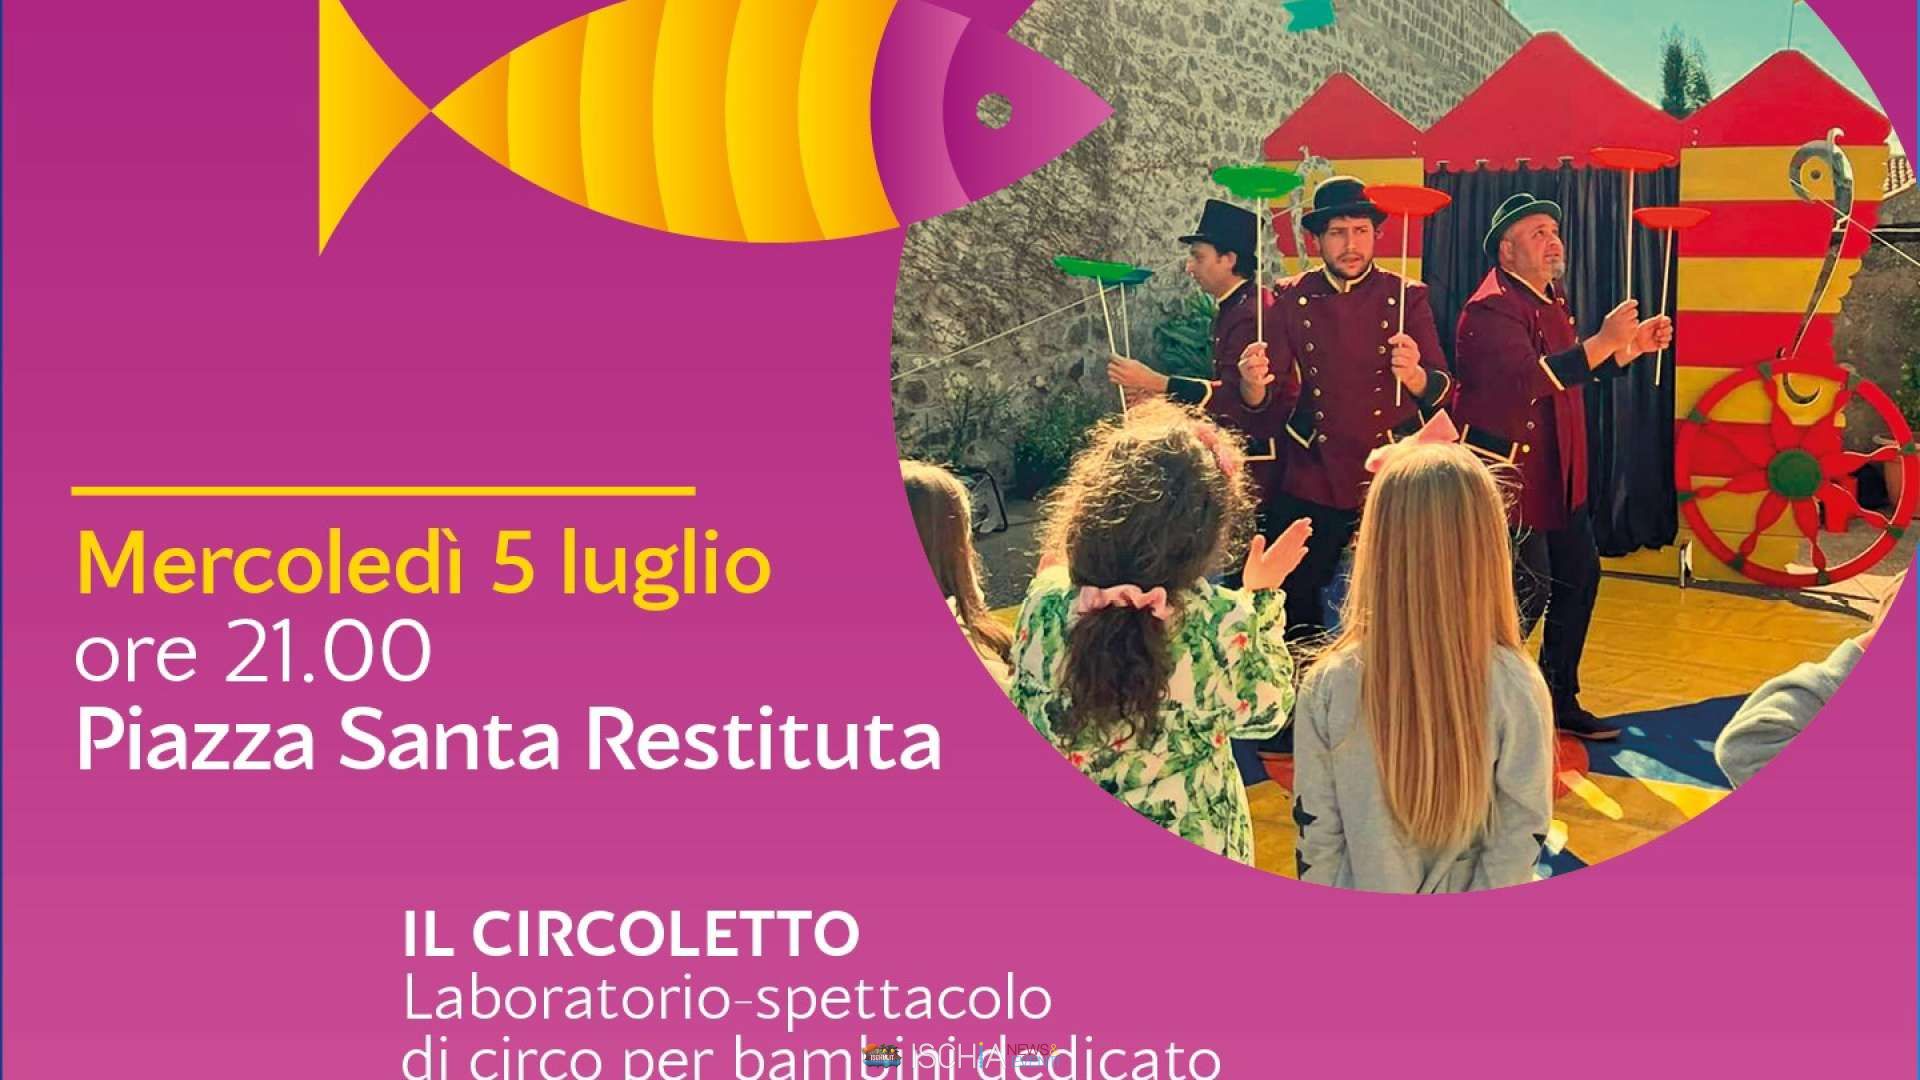 Notícias e eventos de Ischia – Lacco Ameno nas notas de Azul ⴰⵣⵓⵍ, a banda napolitana em concerto na Piazzetta Pontile